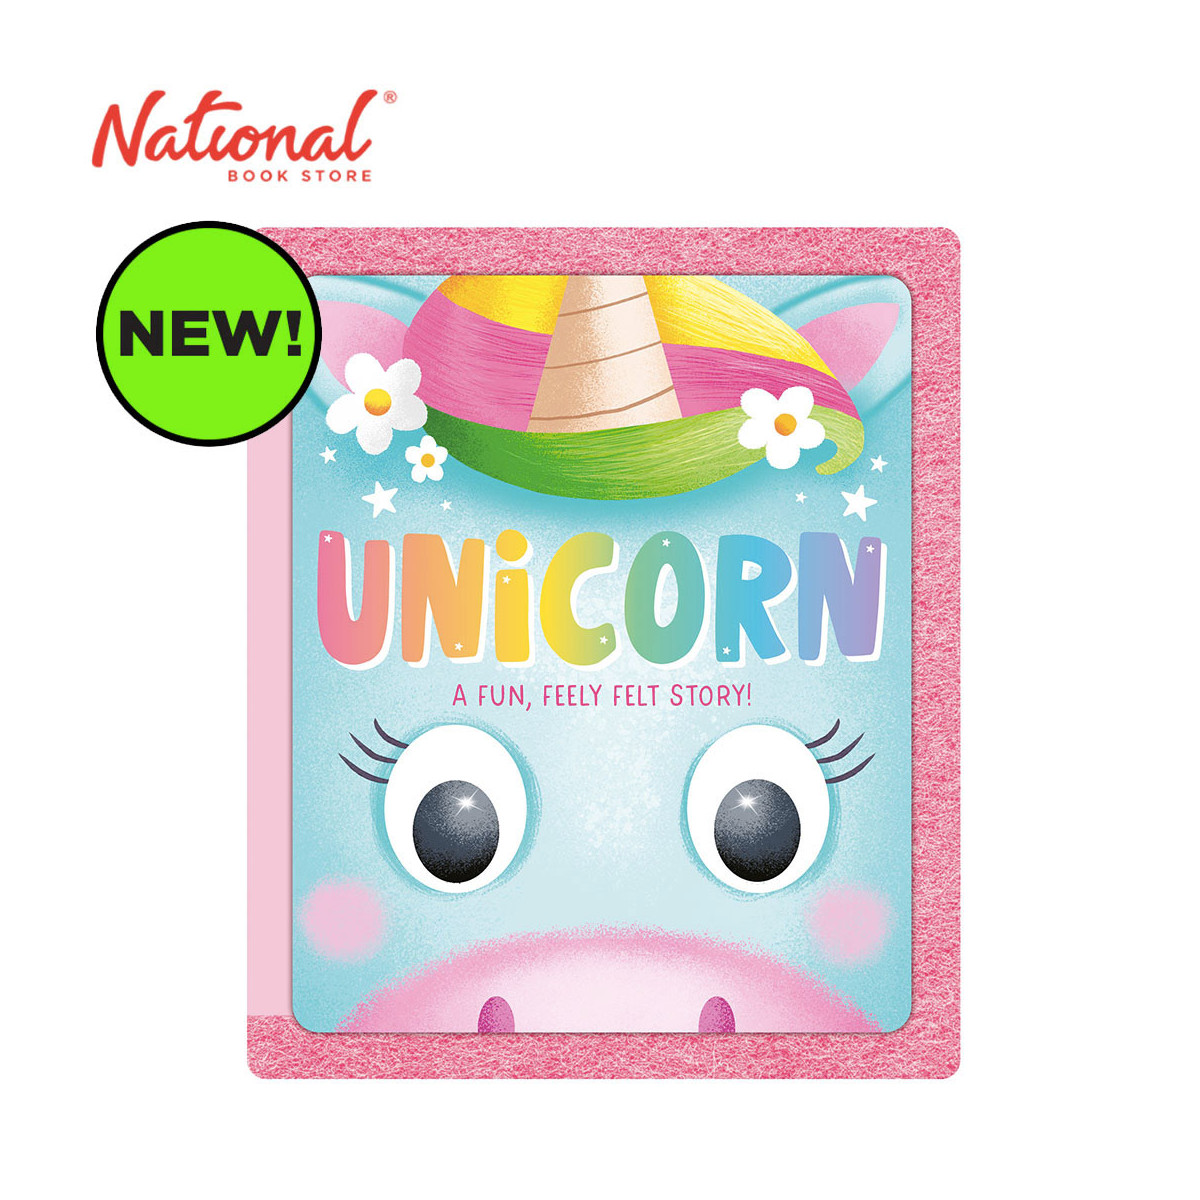 Unicorn: A Fun, Feely Felt Story - Board Book - Preschool